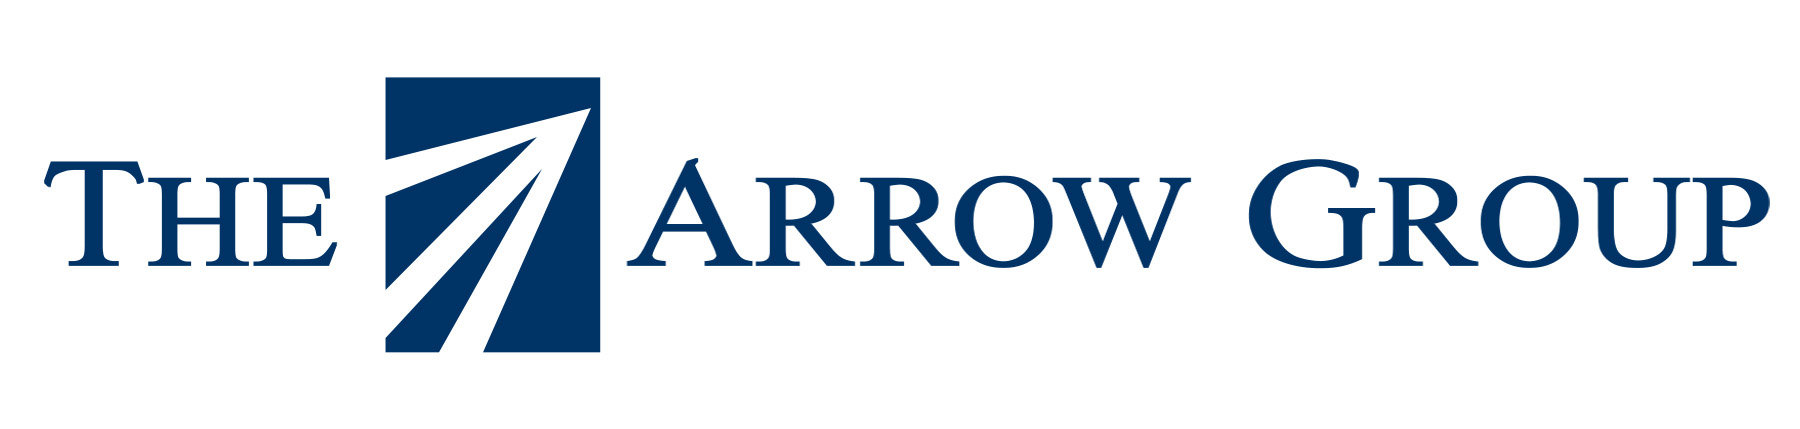 Arrow Group logo